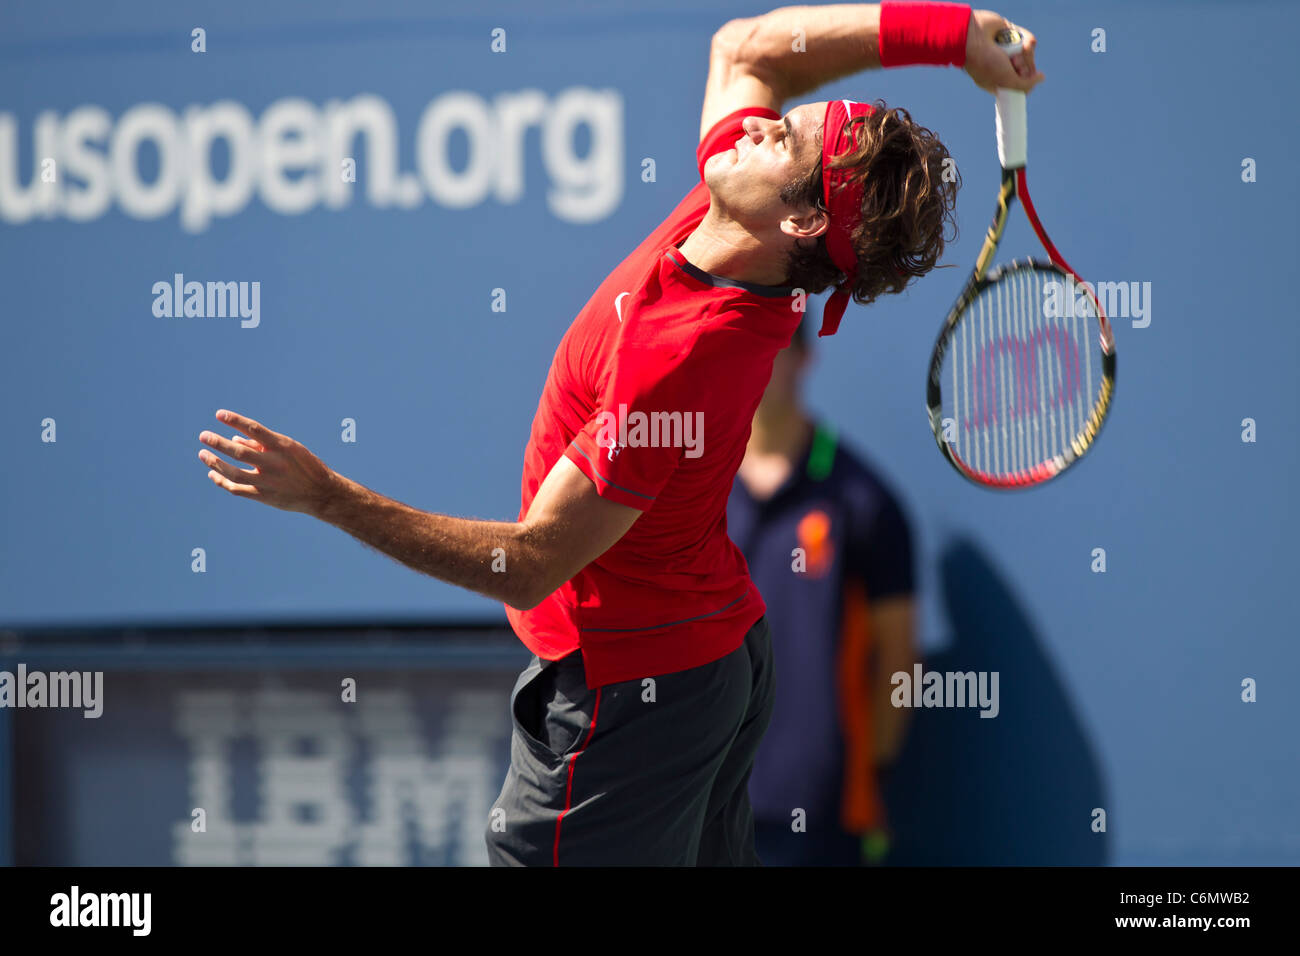 Roger Federer (SUI) im Wettbewerb bei den 2011 US Open Tennis. Stockfoto